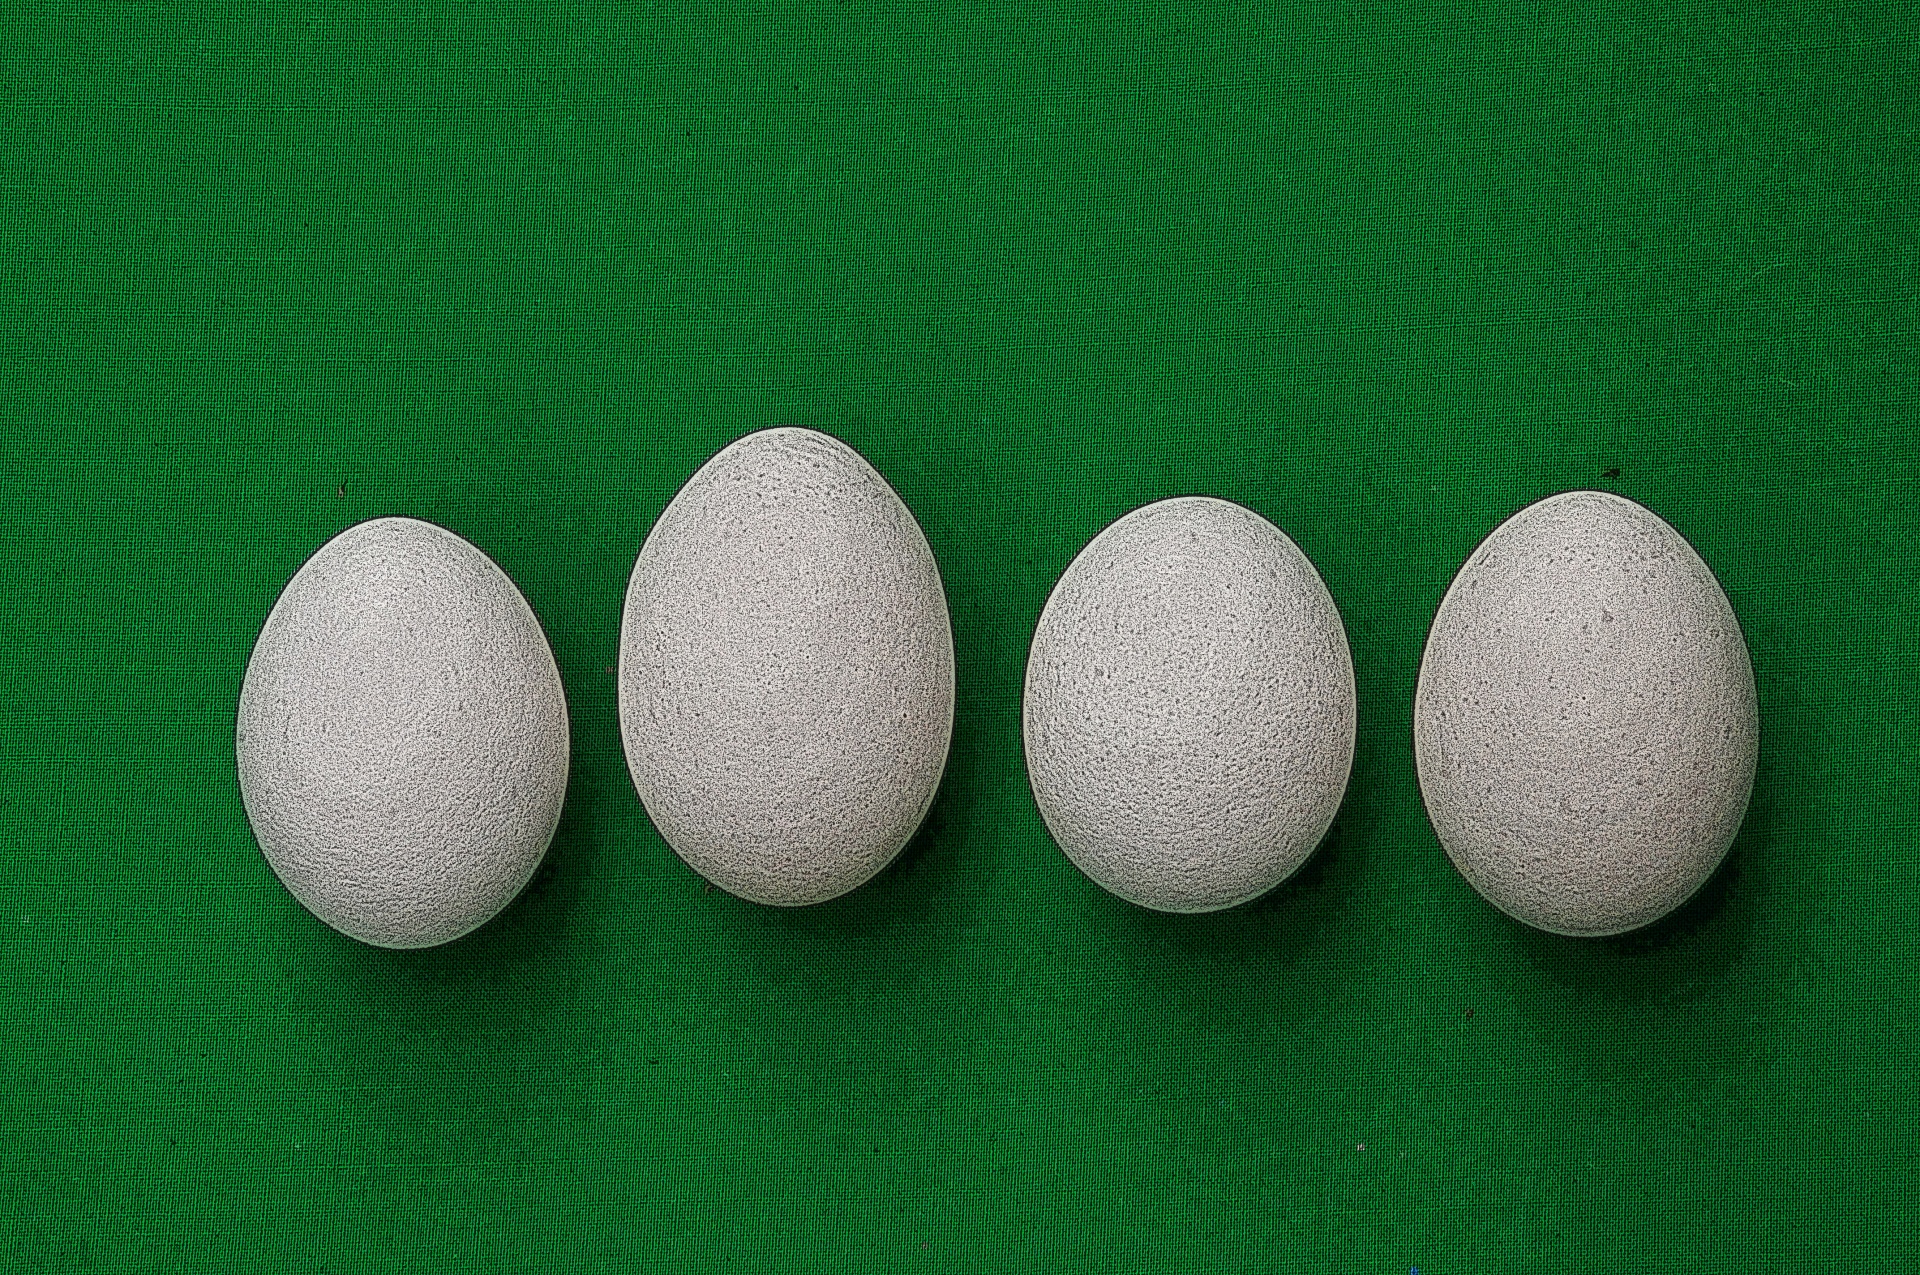 Illustrated Eggs